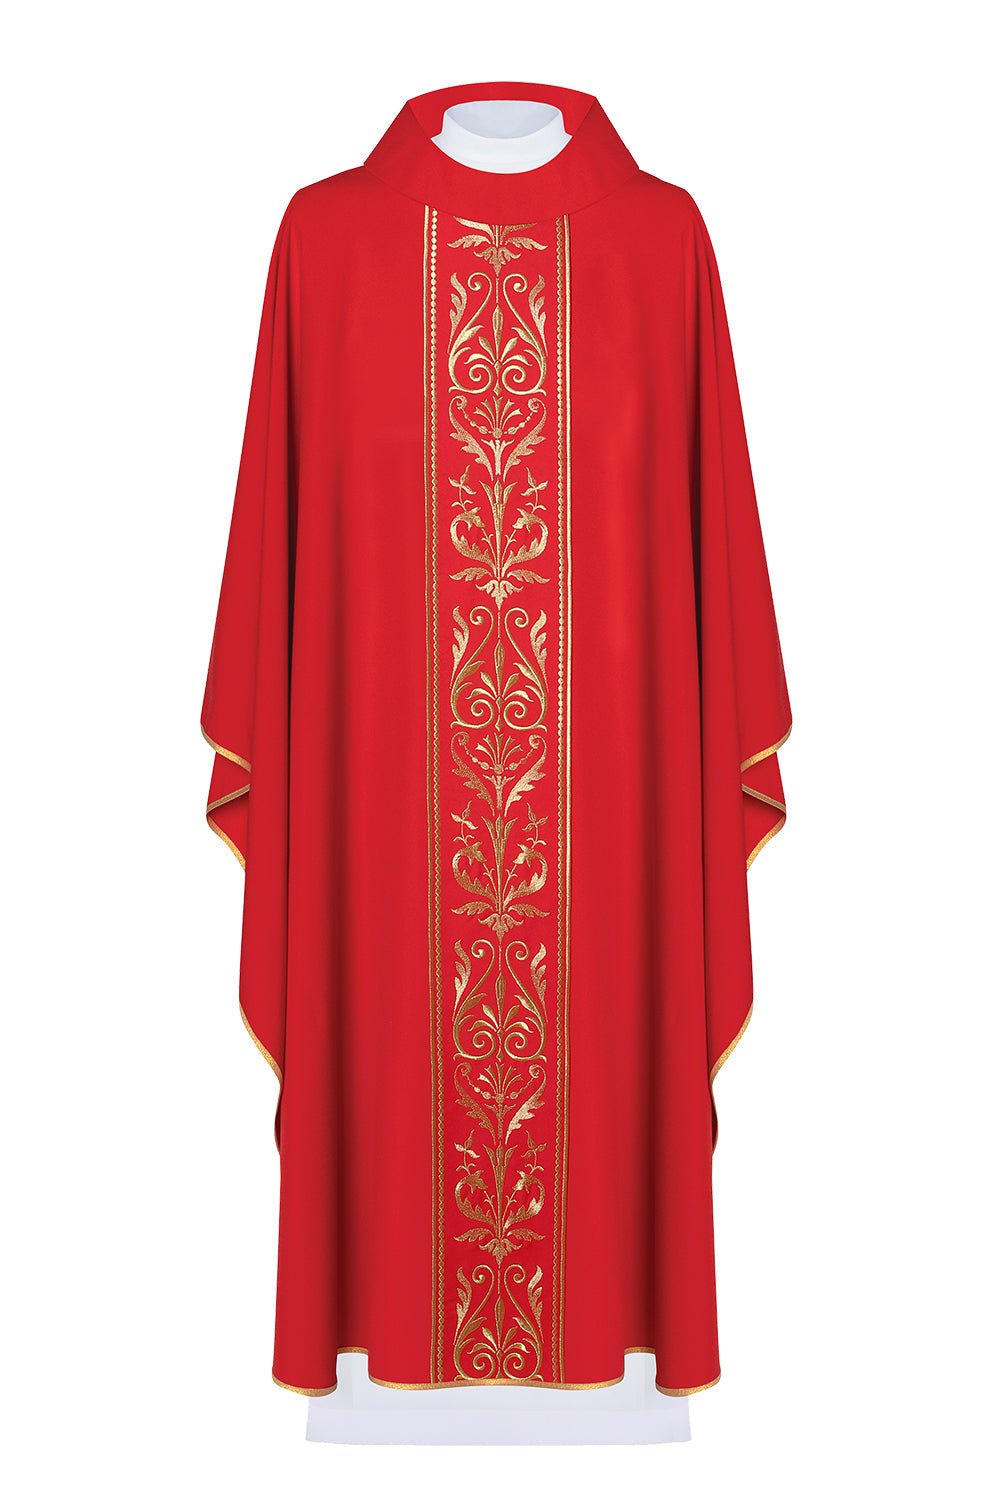 Czerwony ornat liturgiczny zdobiony złotym pasem haftowanym